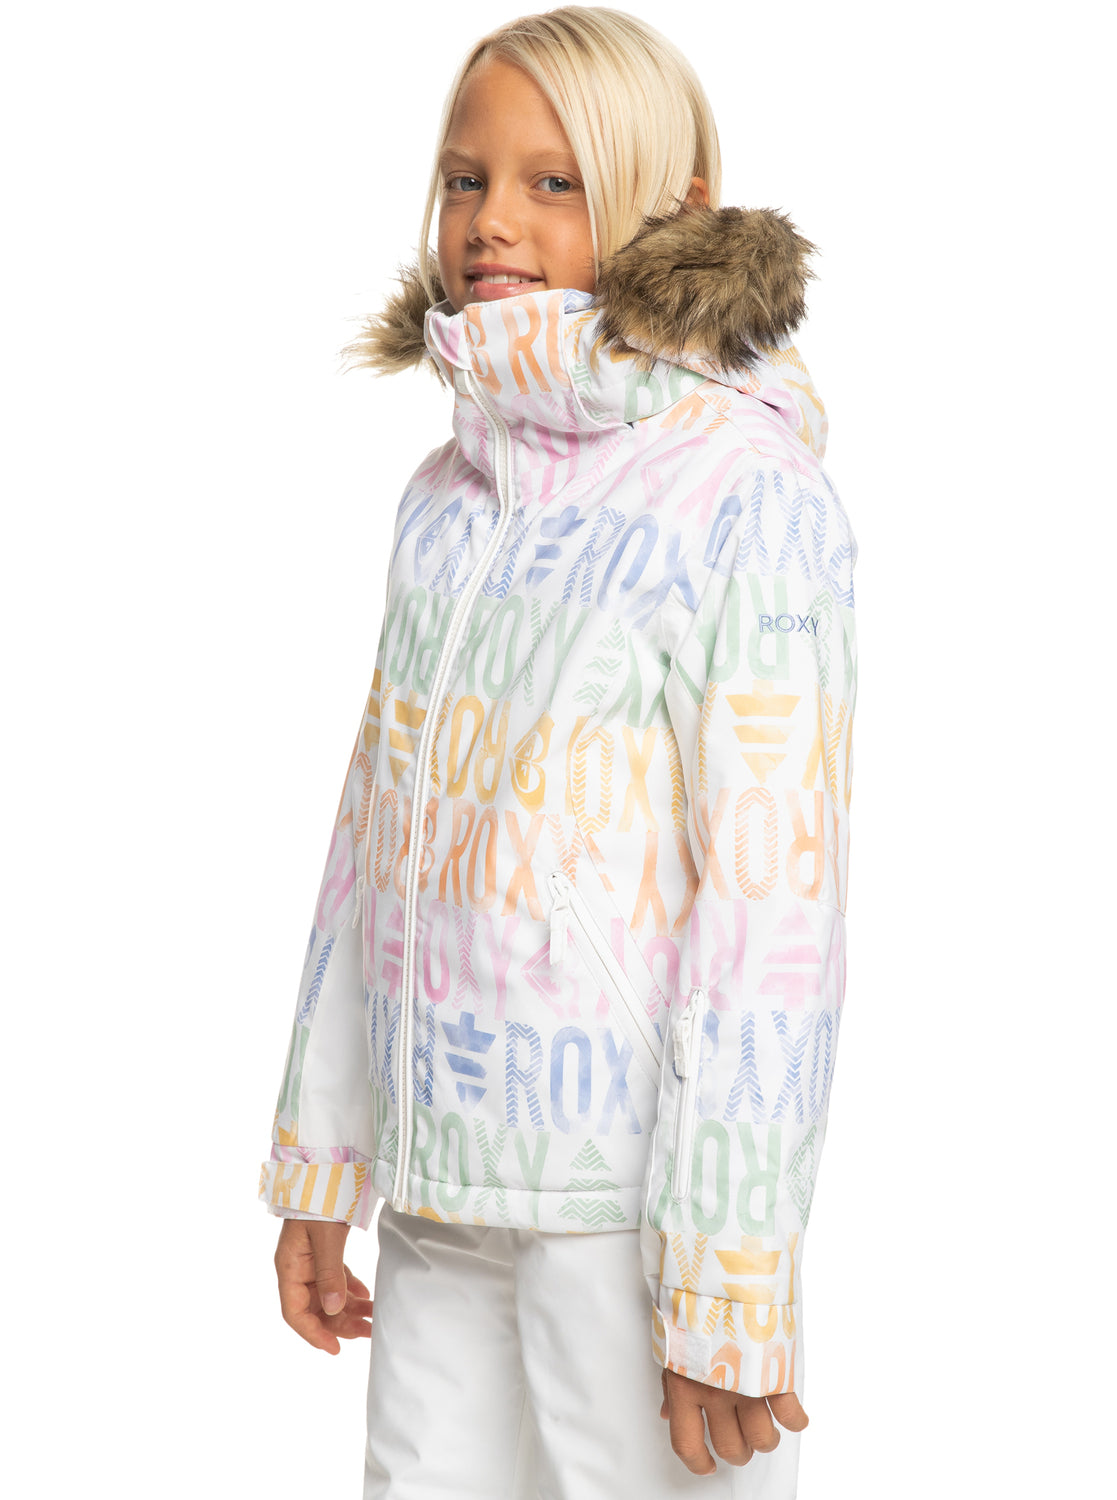 Roxy Jet Ski Girls Ski Jacket - Bright White